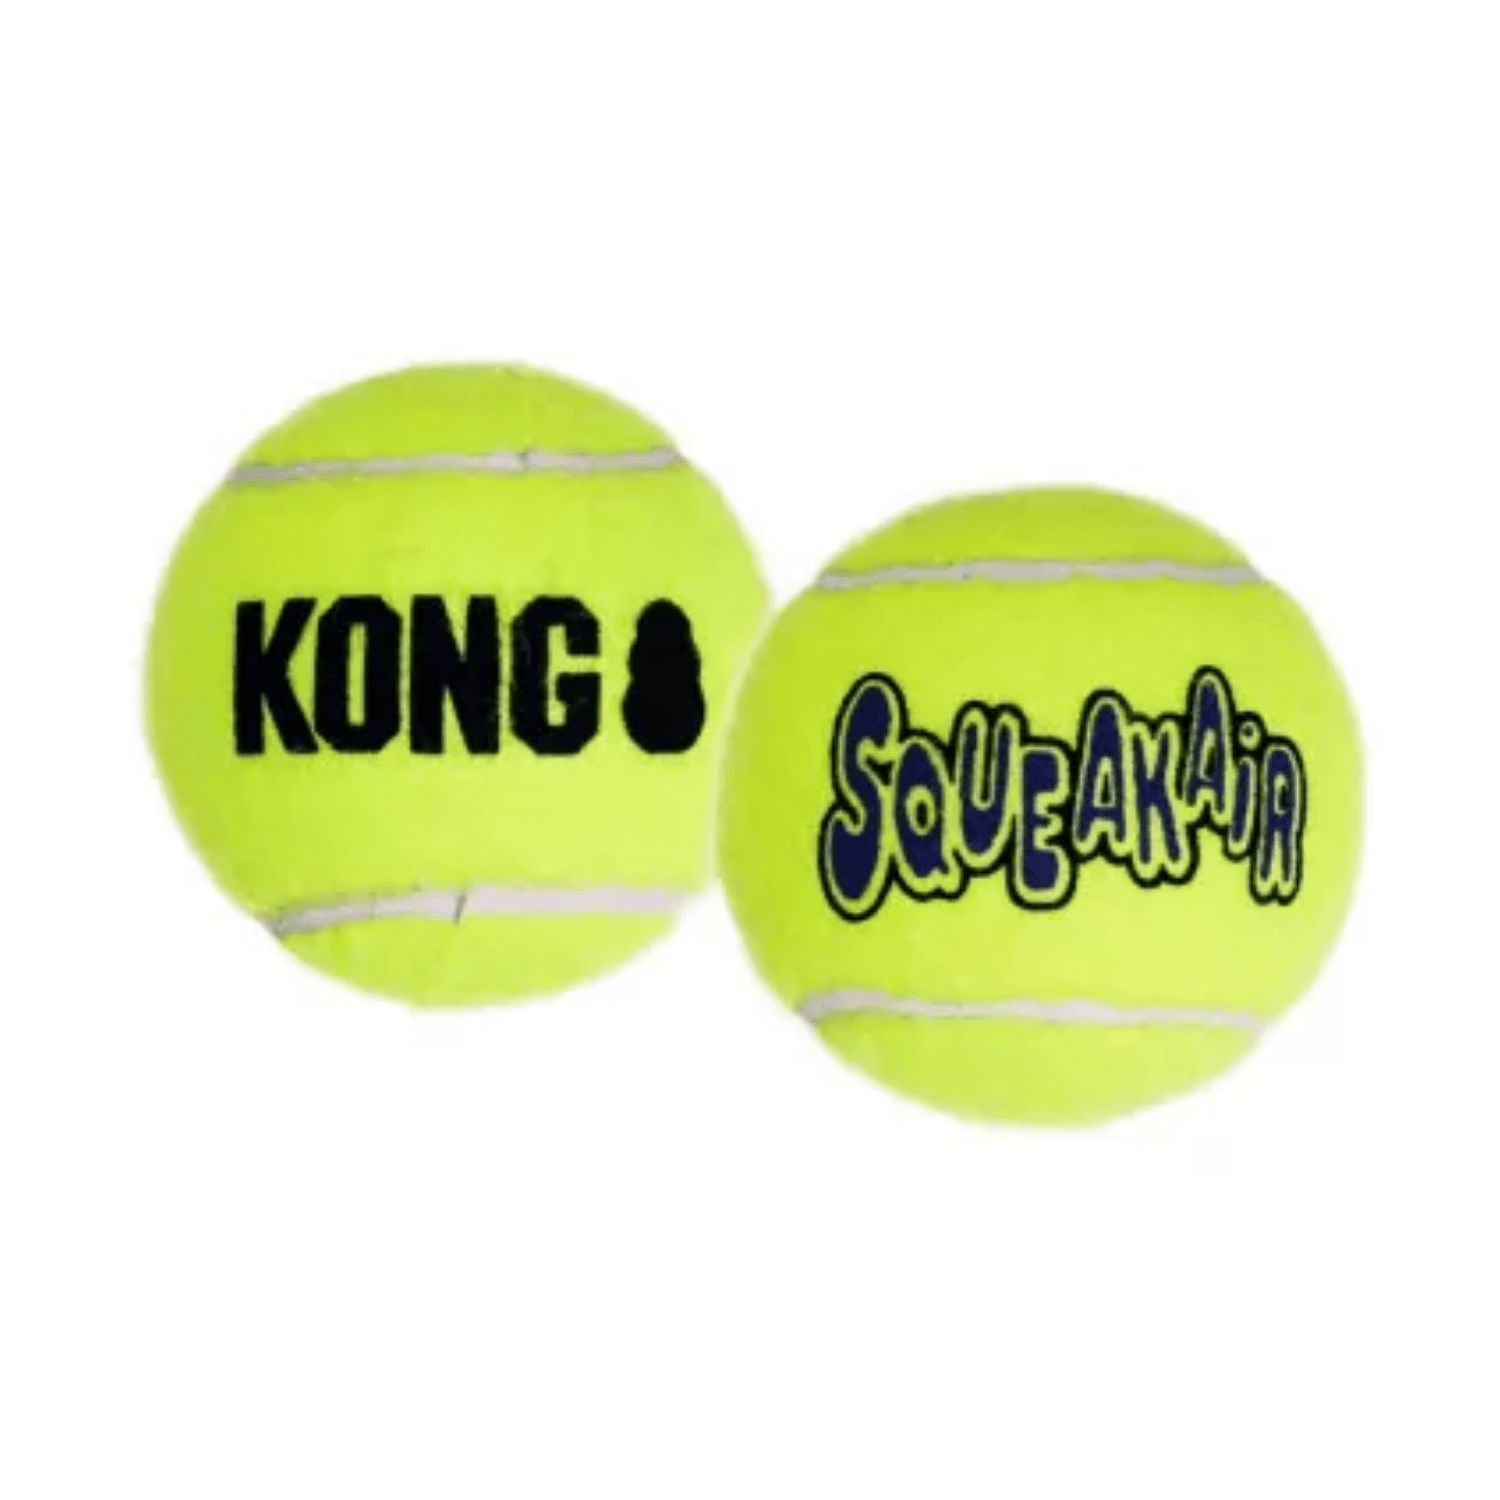 Kong Air Squeaker Ball